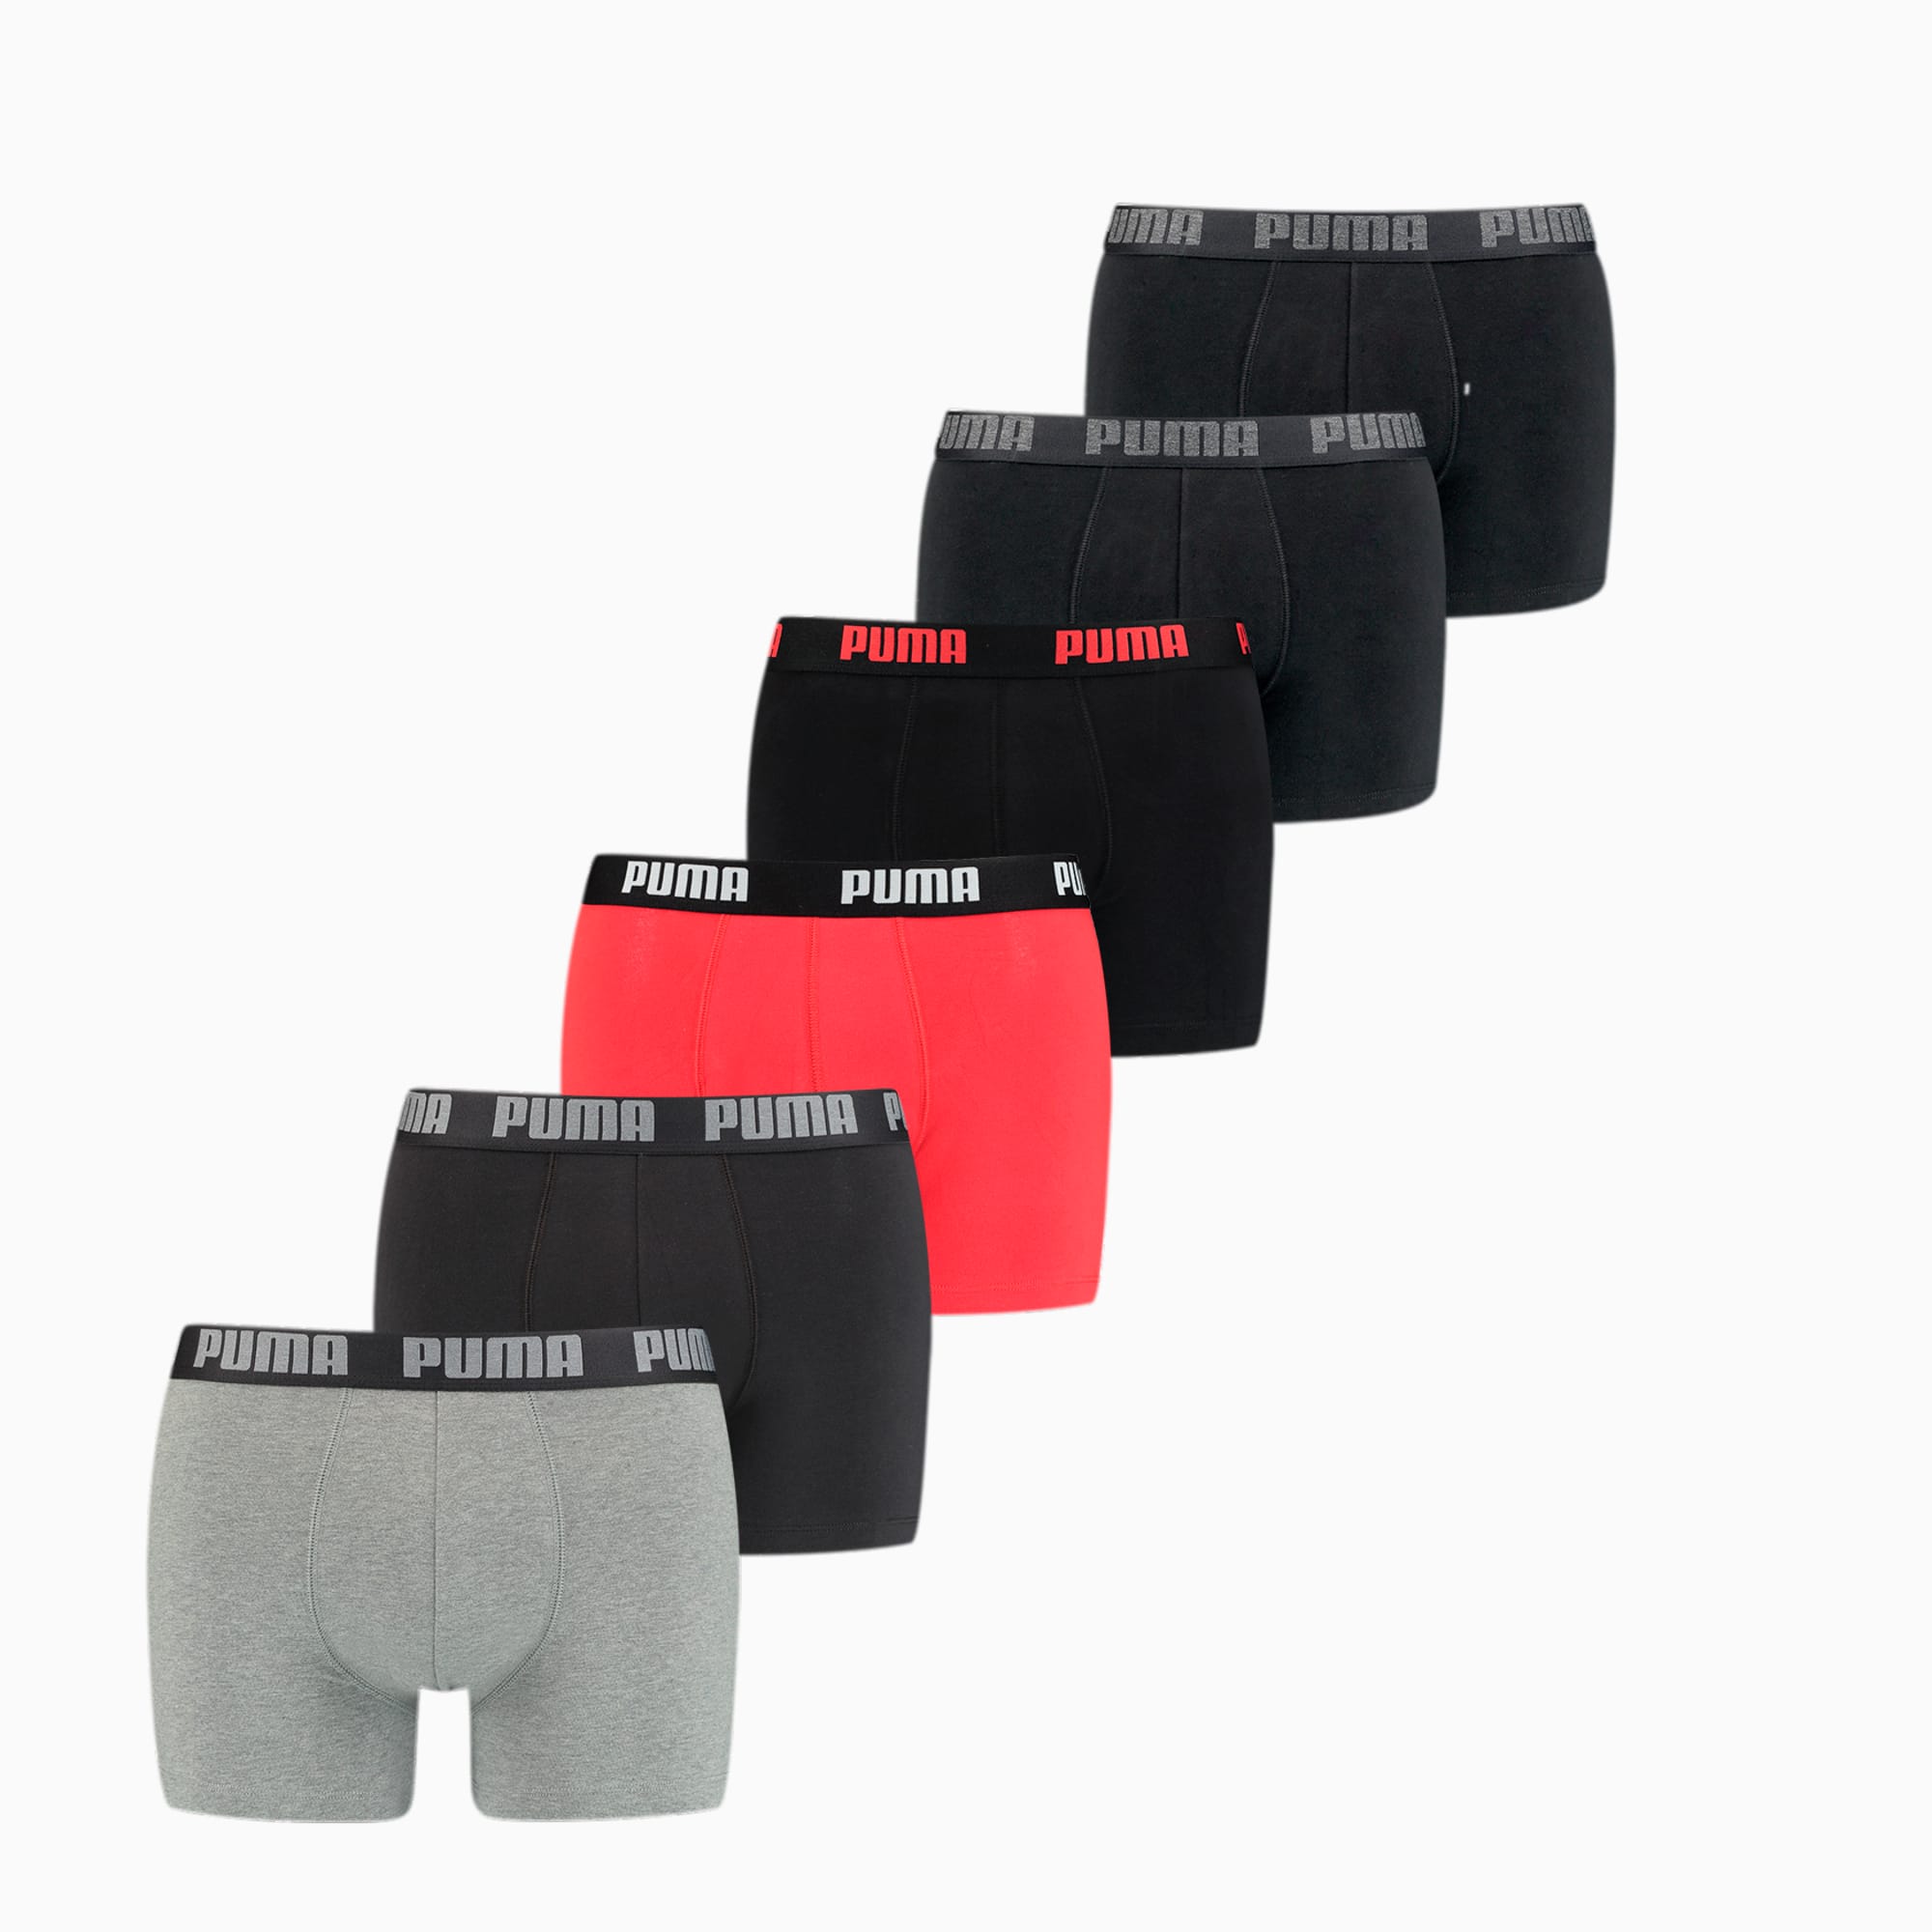 Basic Men's Boxers 6 pack